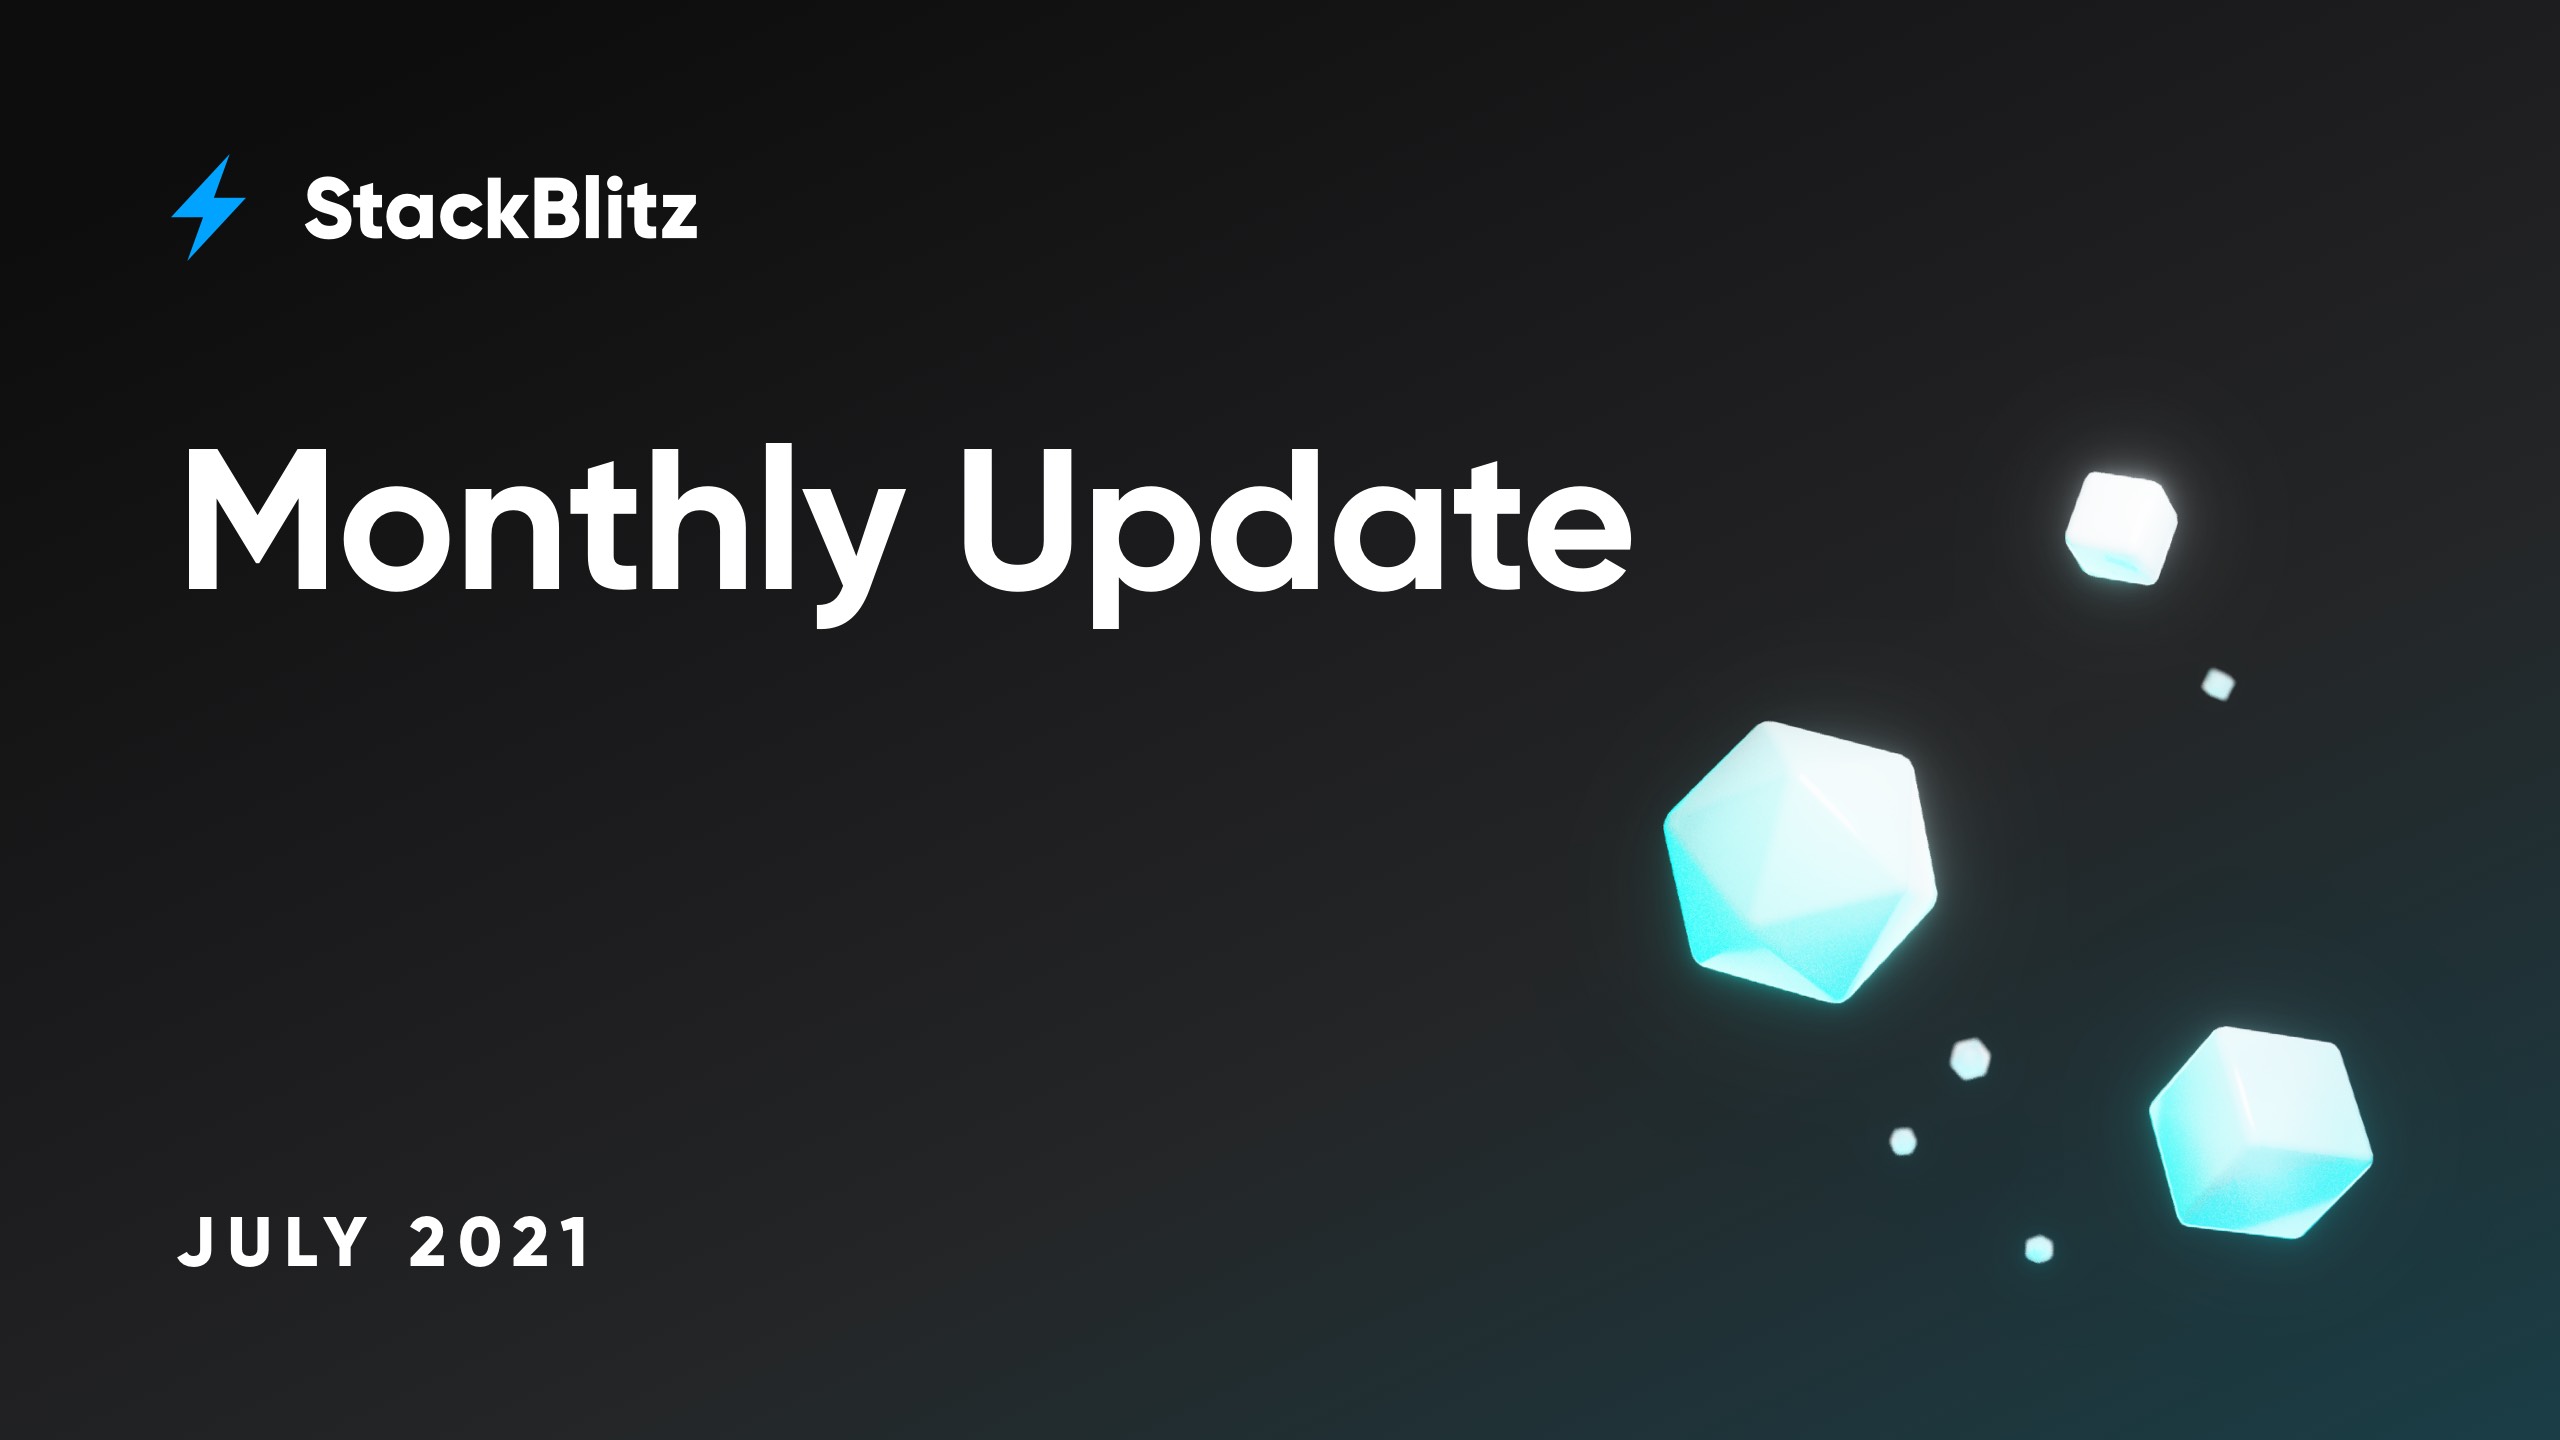 Updates to StackBlitz platform in July 2021